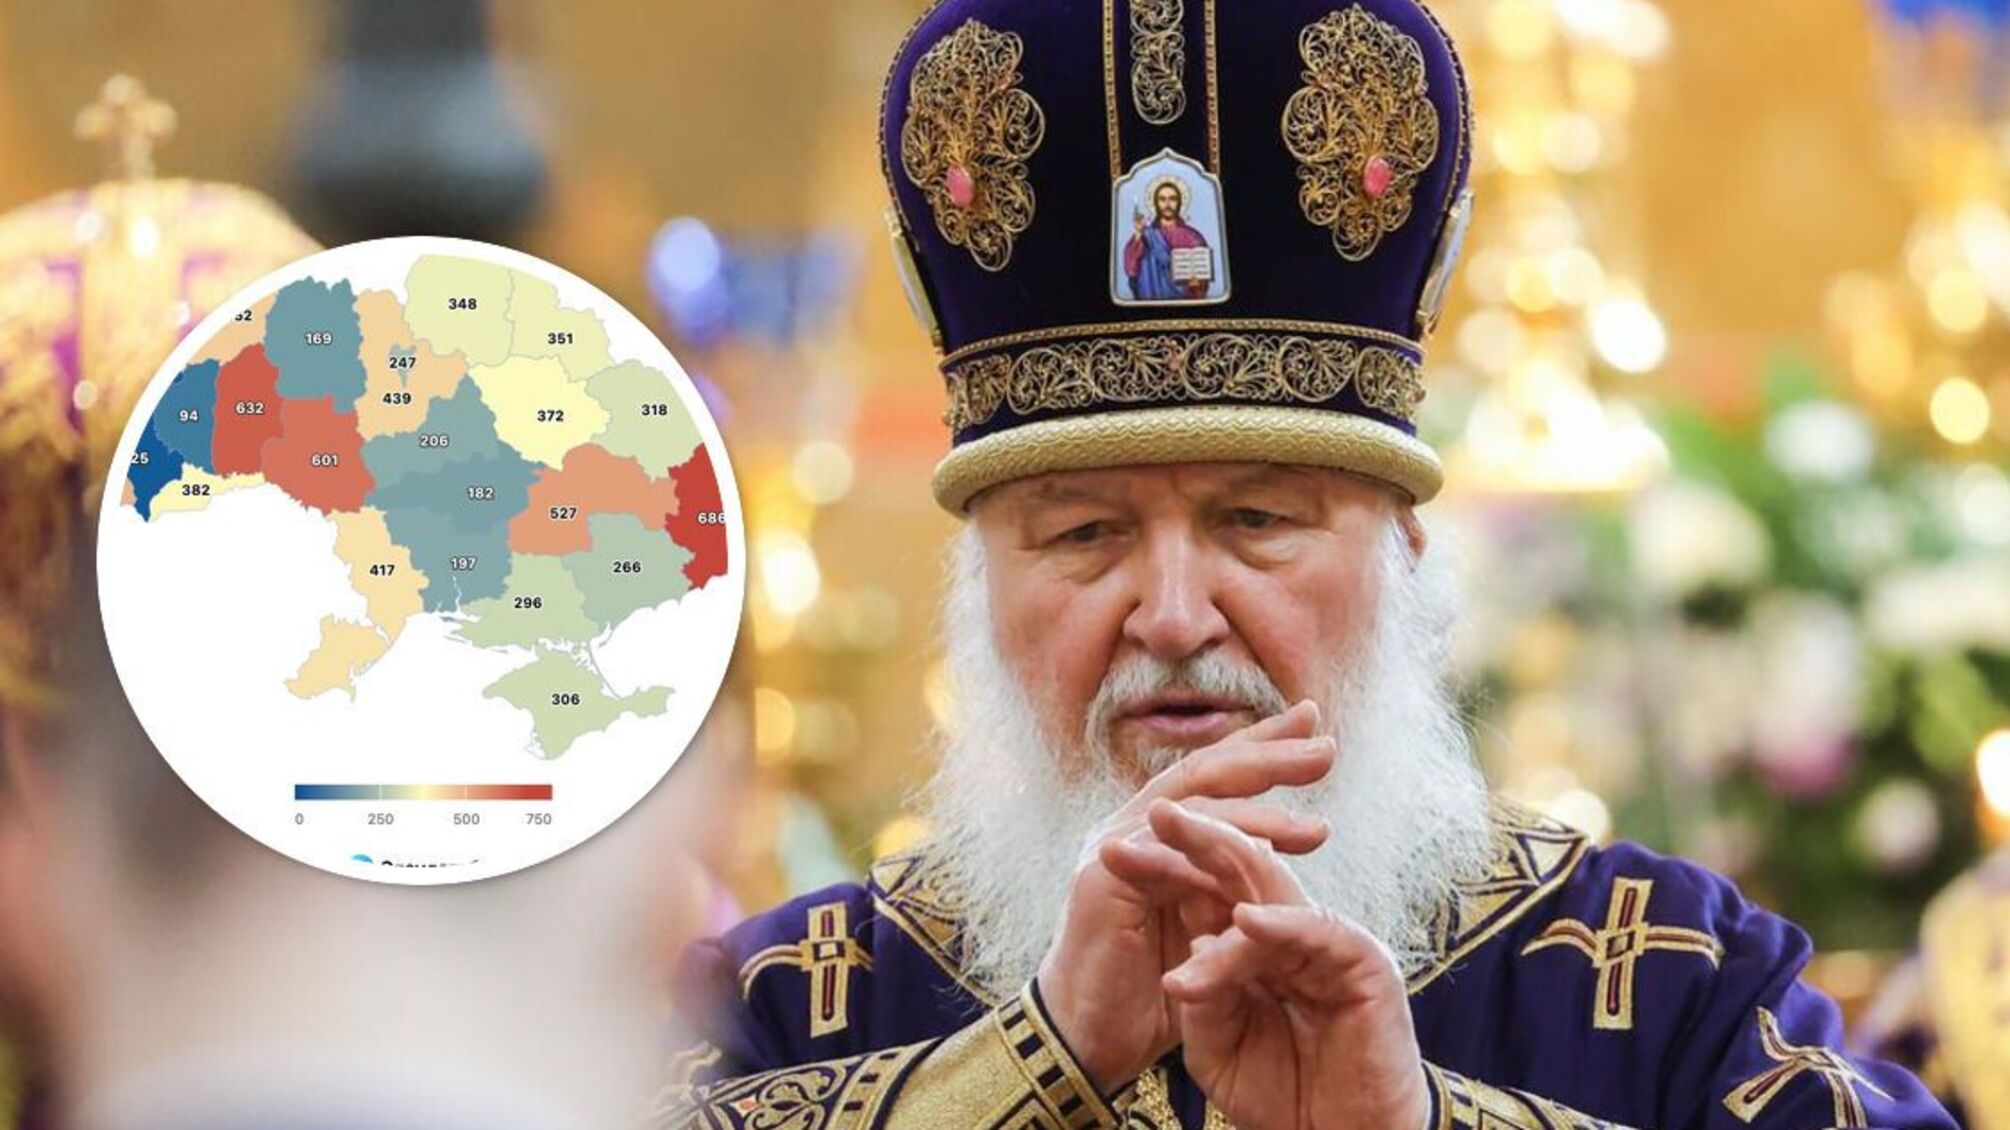 Opendatabot: в Україні діє понад 8,5 тисячі 'московських' церков, найбільше – на Донеччині (інфографіка)